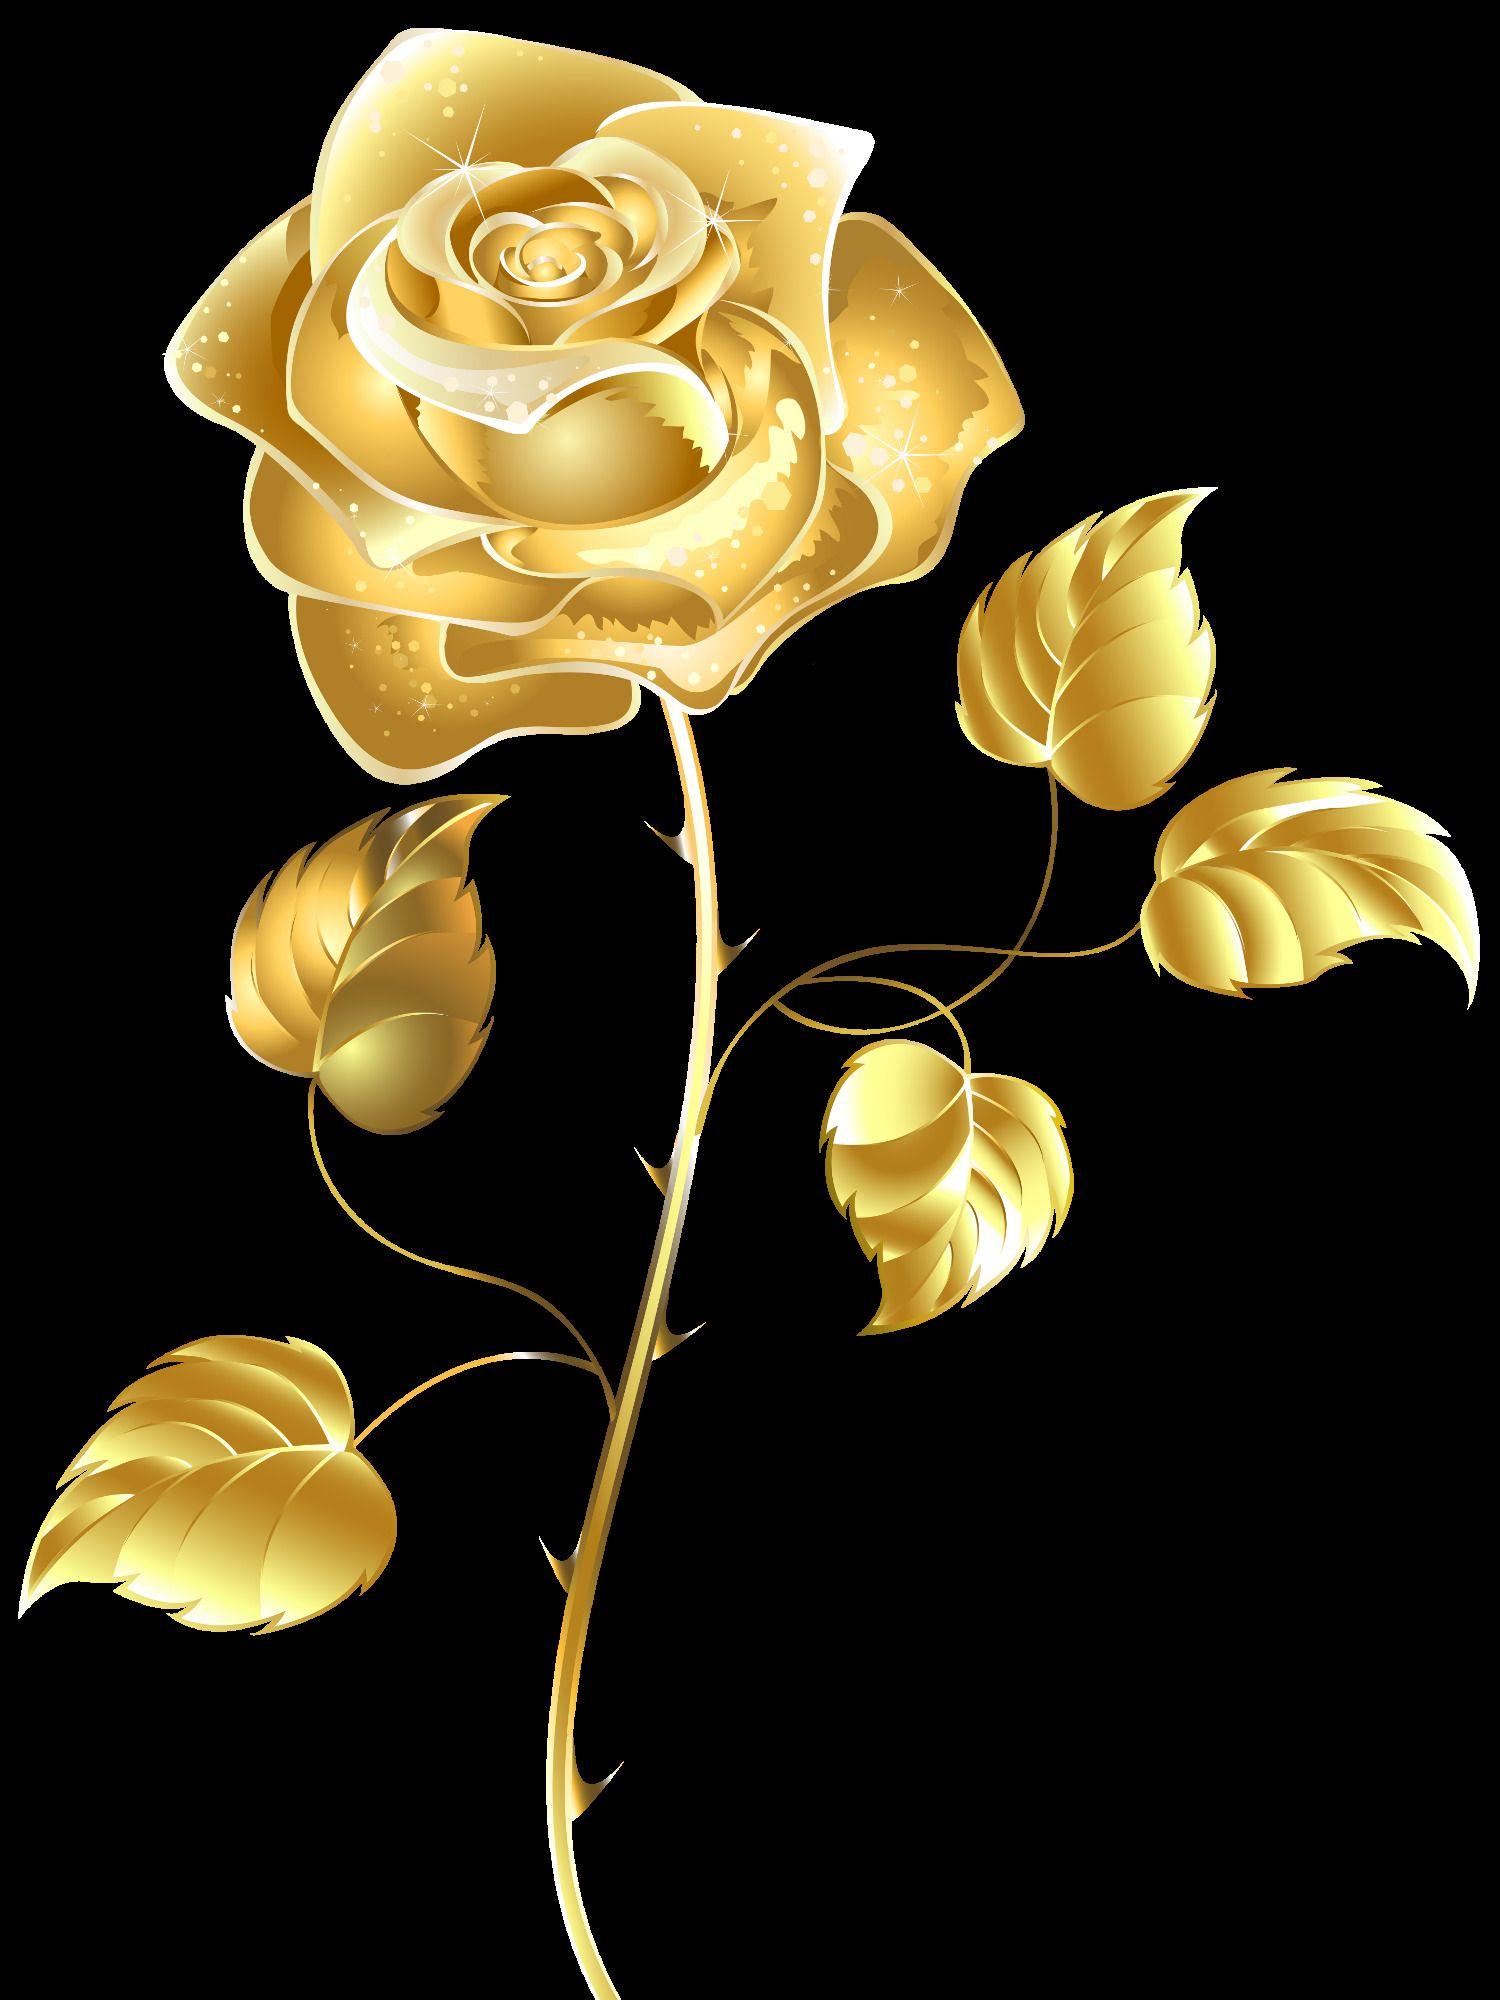 Hình nền Hoa vàng iPhone - Top Những Hình Ảnh Đẹp